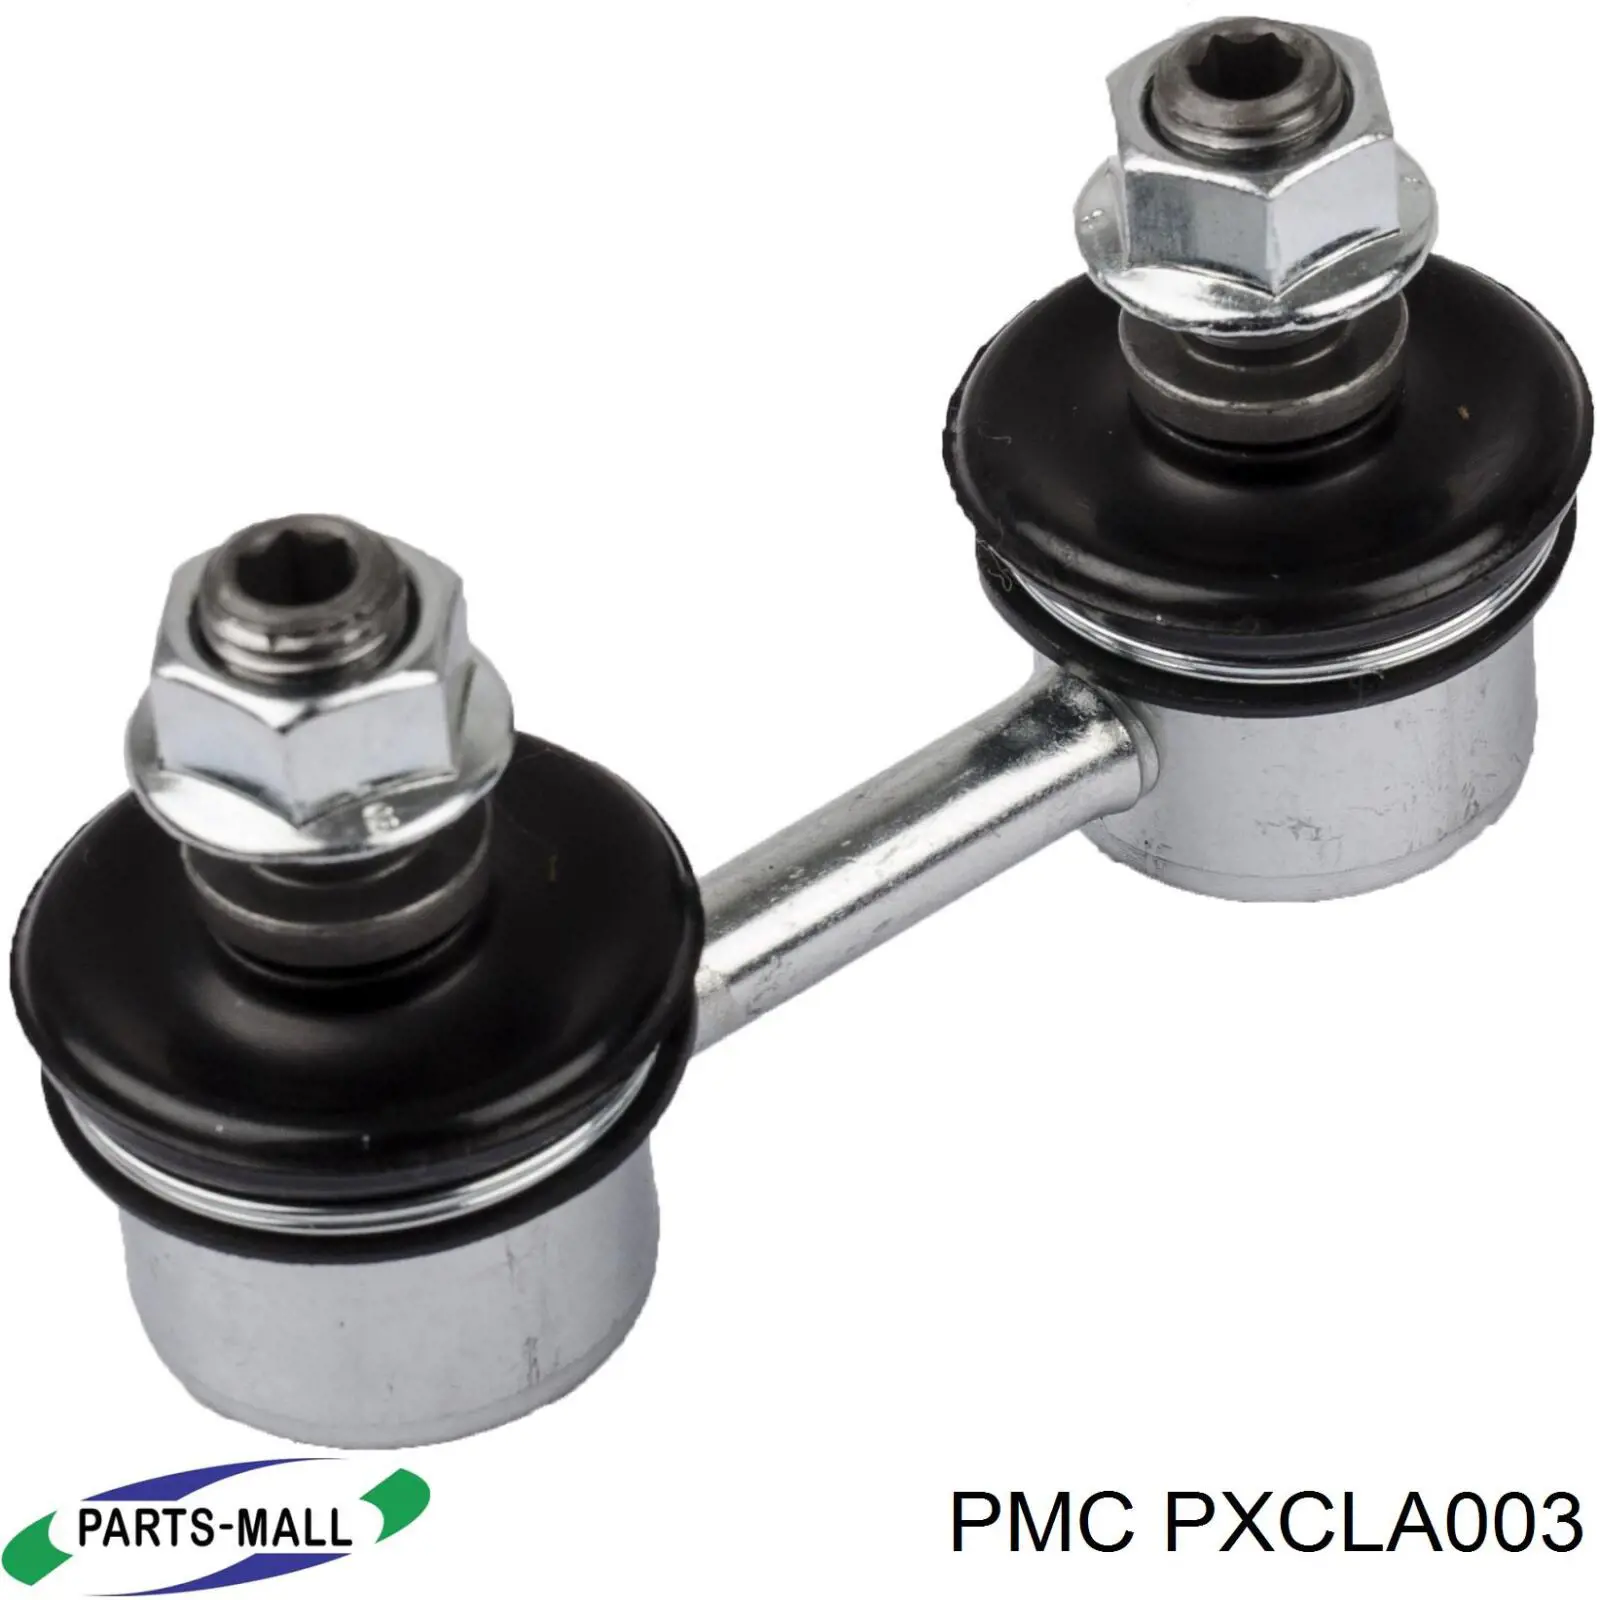 PXCLA003 Parts-Mall soporte de barra estabilizadora delantera